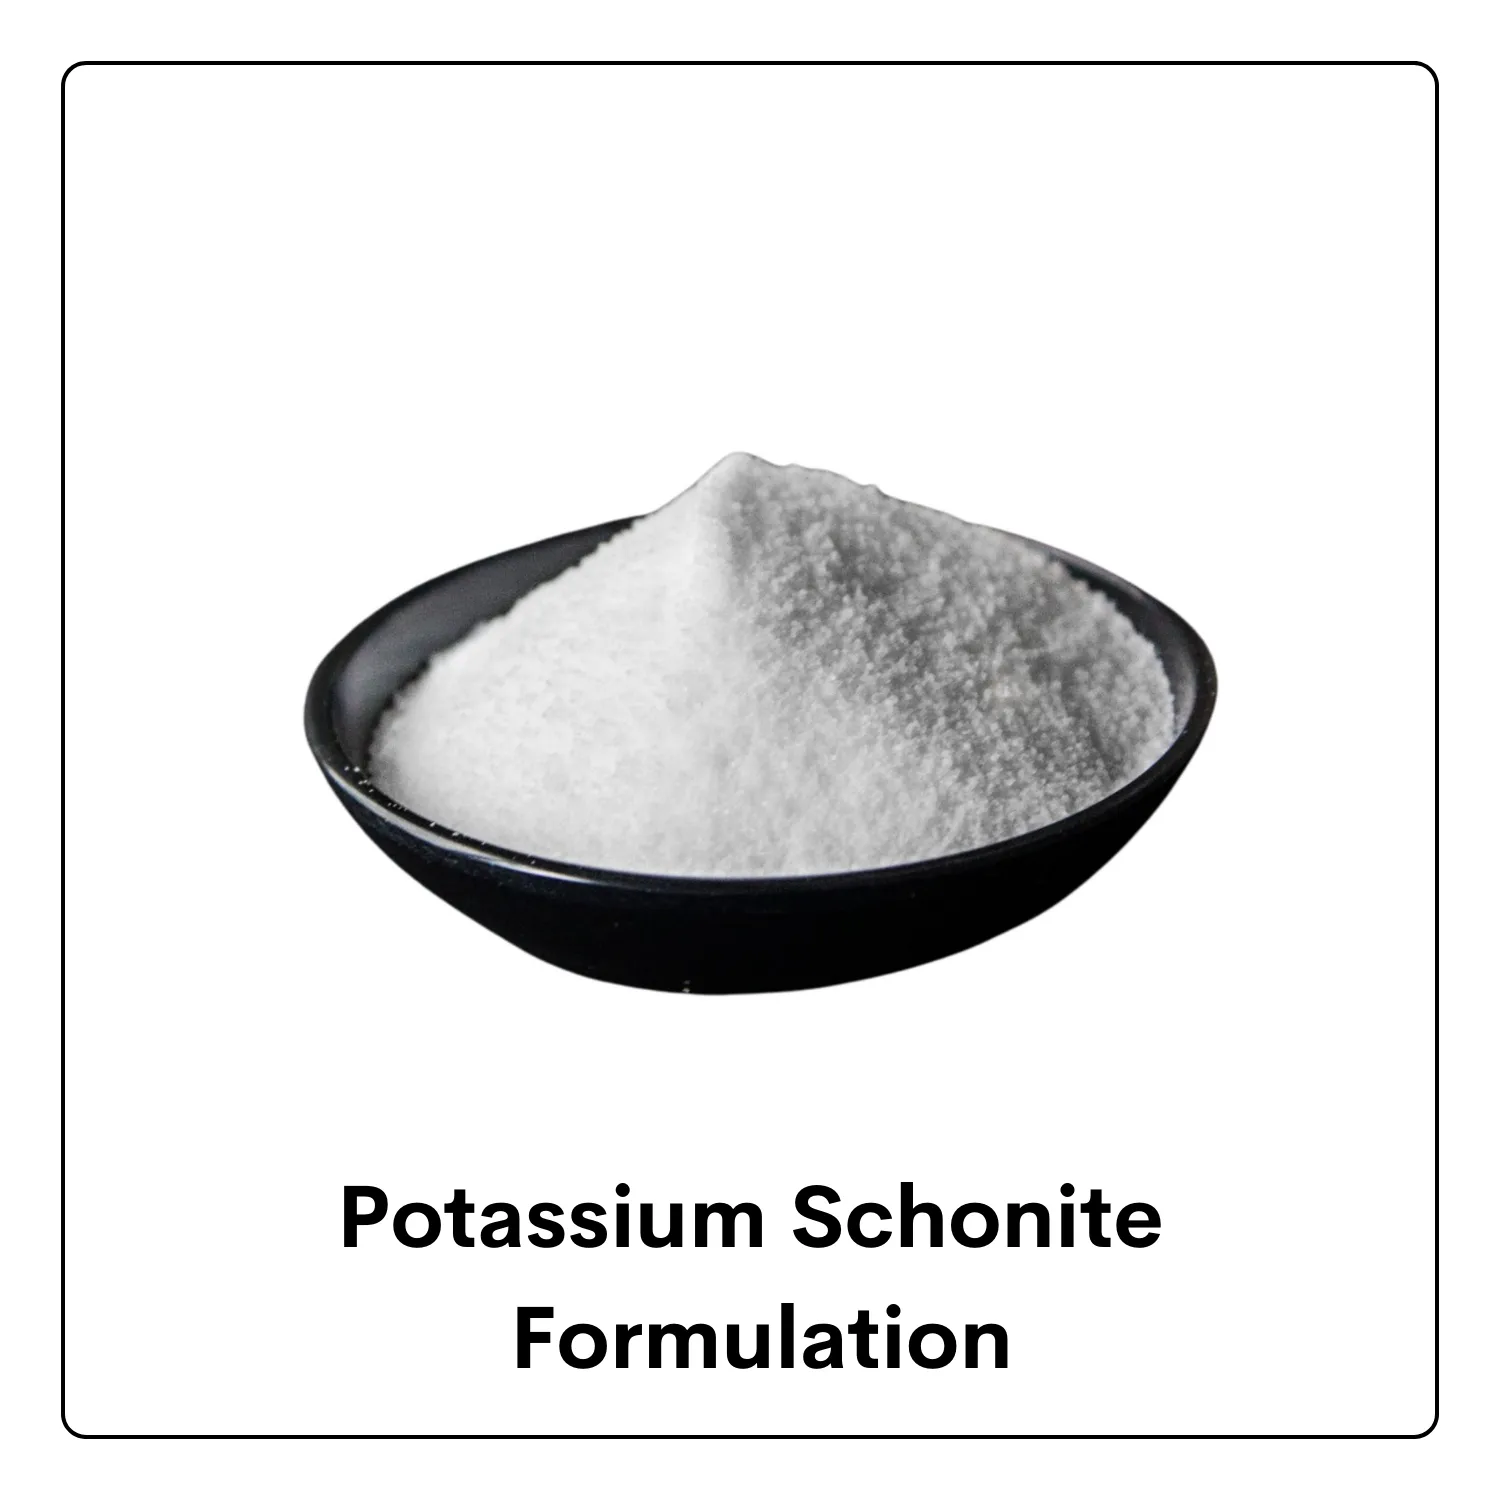 Potassium Schonite